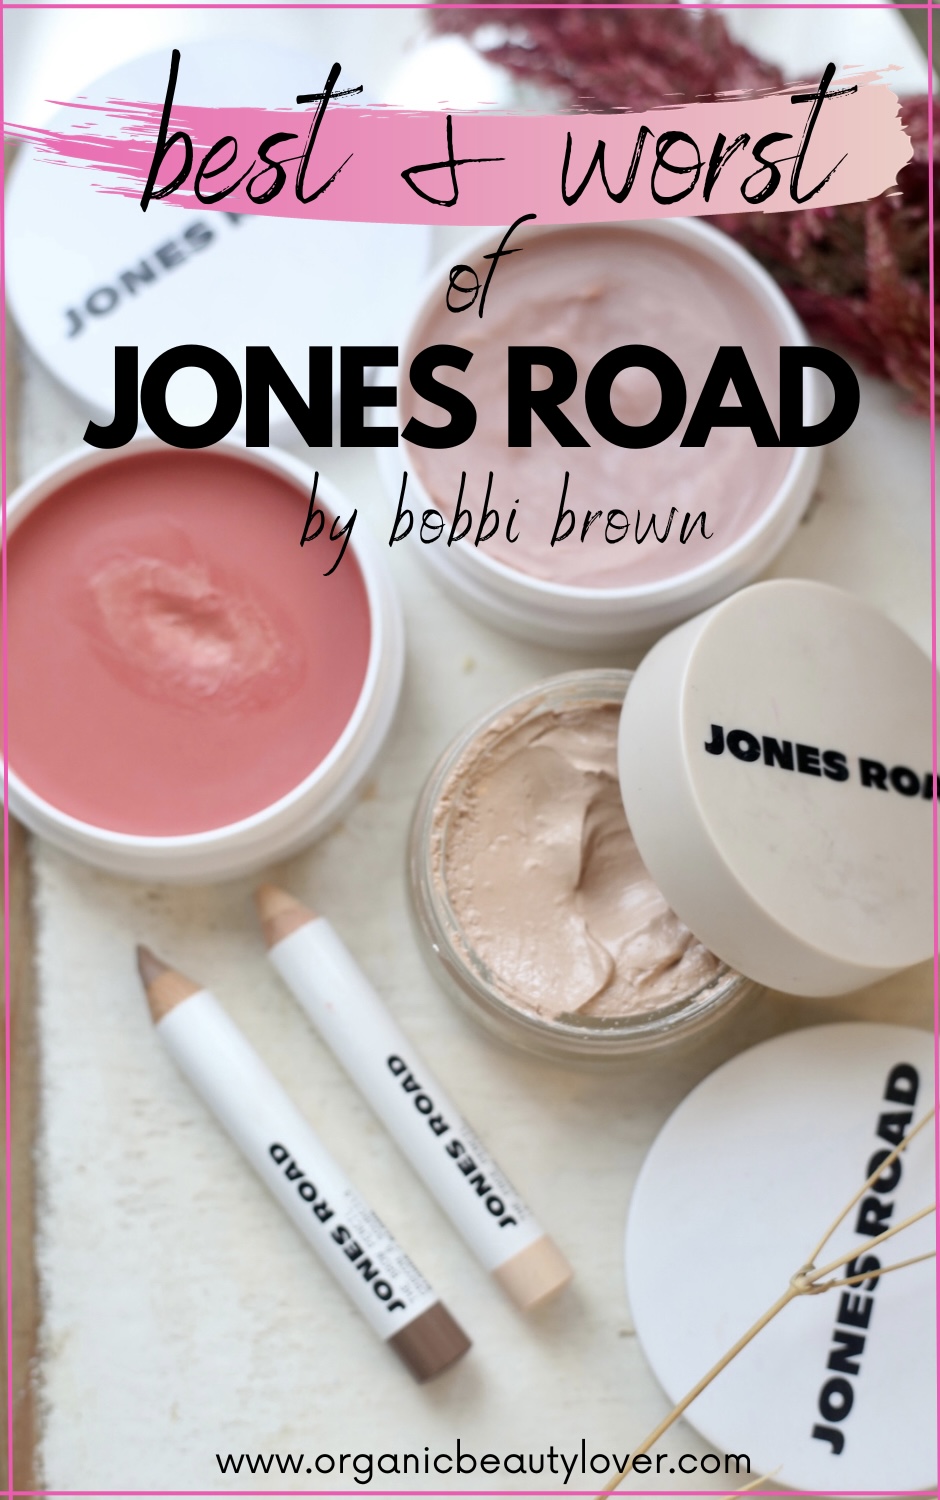 jones road beauty review